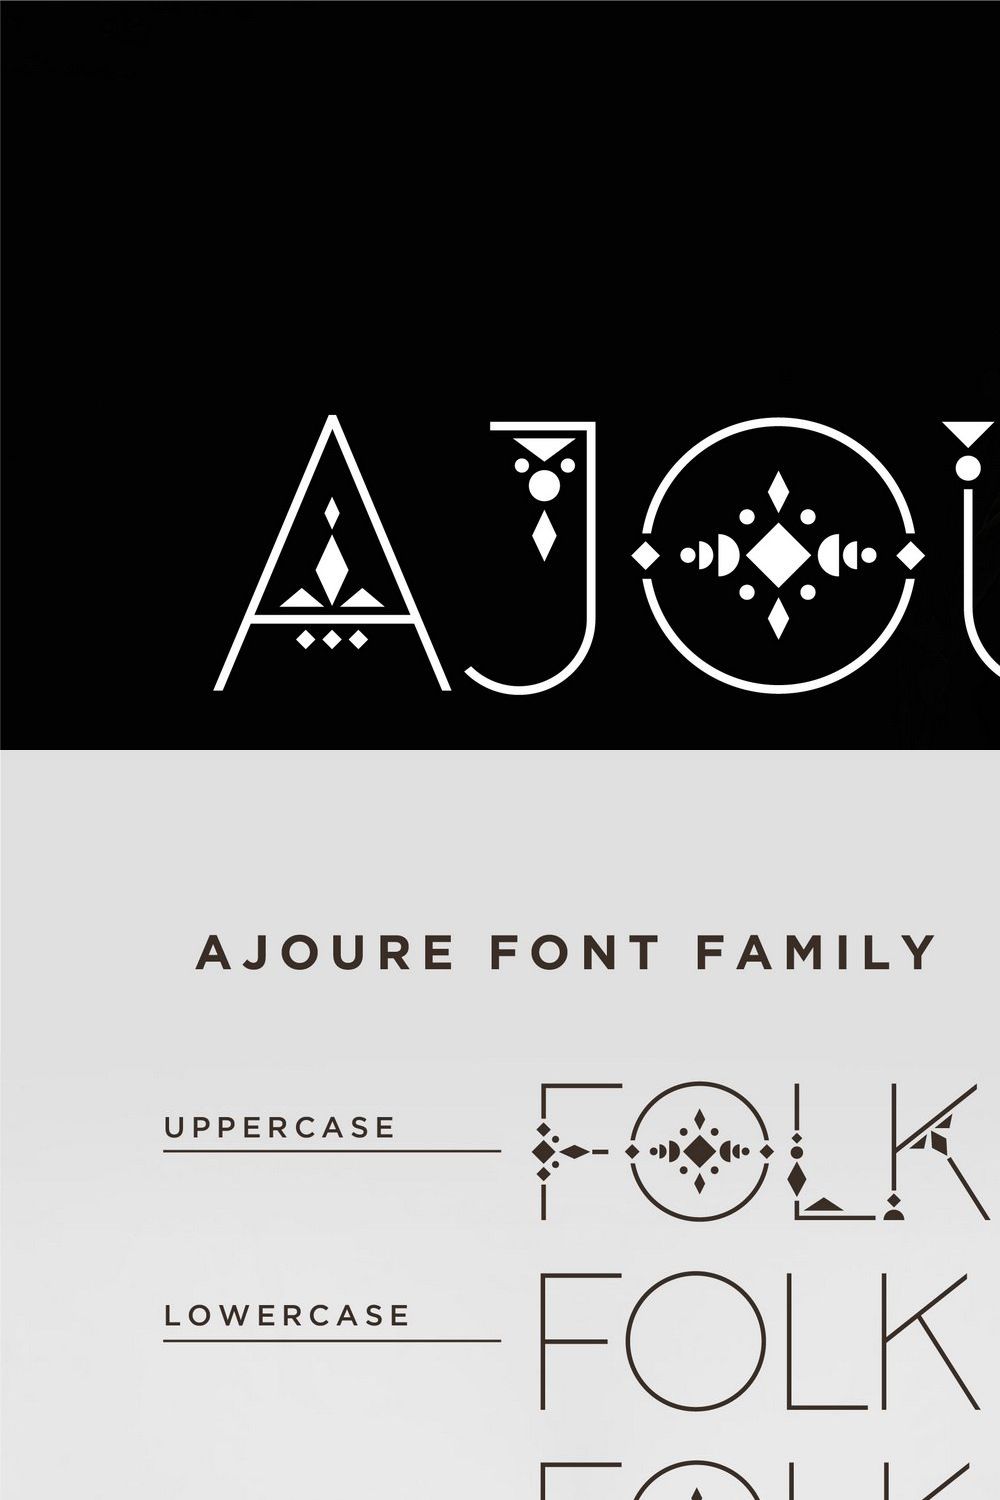 Ajoure - Folk Art Logo Font Family pinterest preview image.